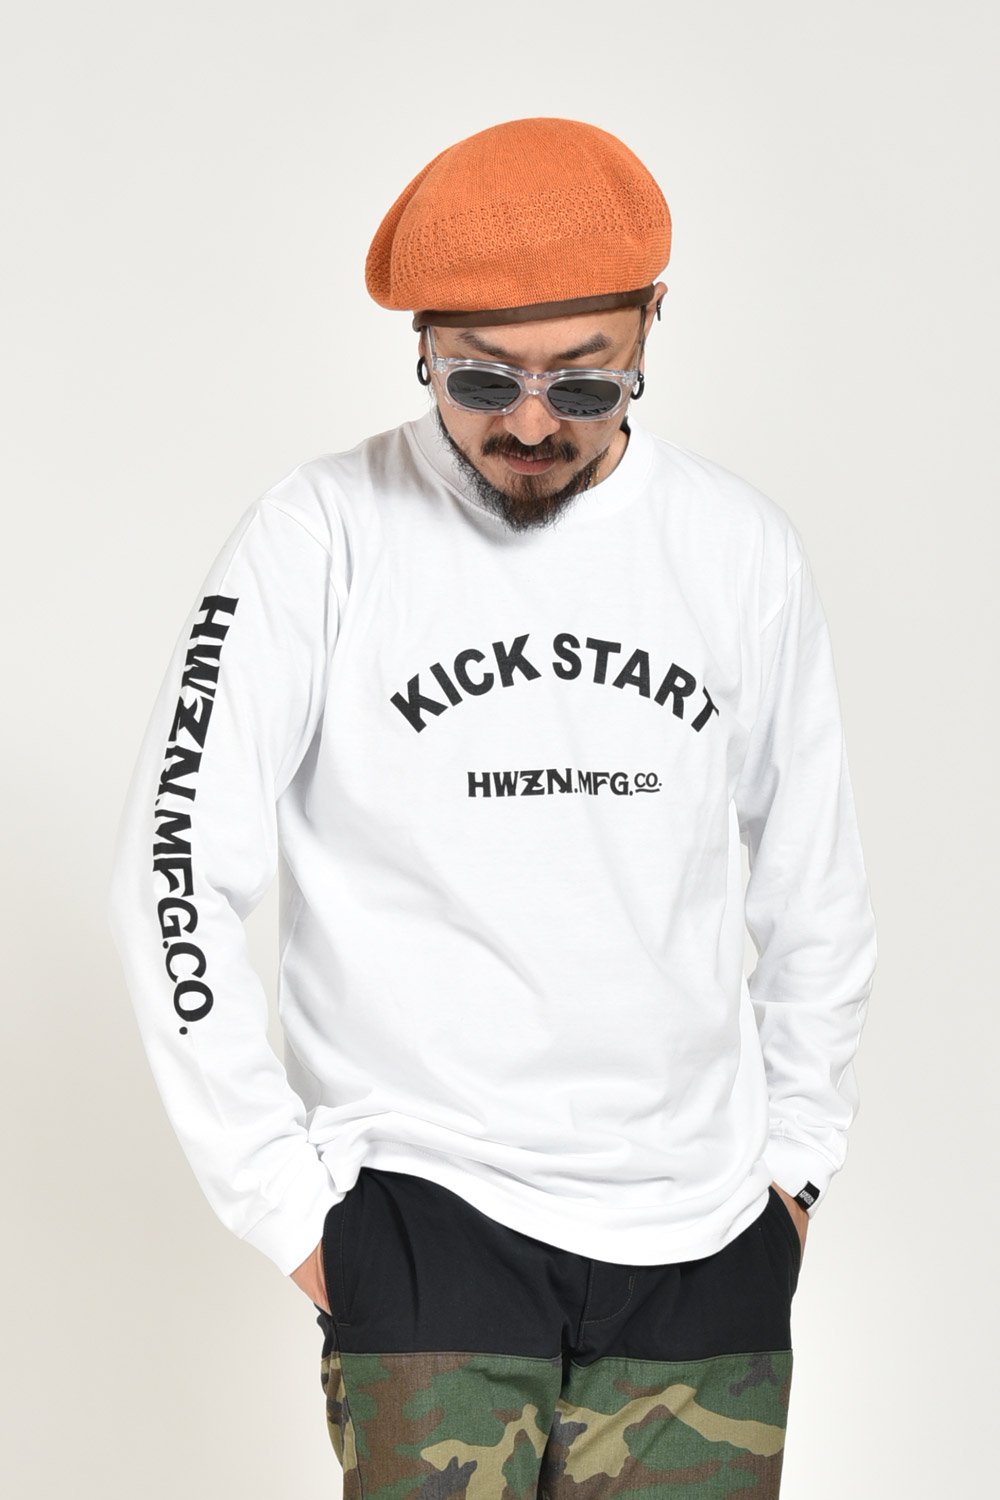 HWZNBROSS(ハウゼンブロス) ロングスリーブTシャツ KICK START 通販正規取扱 | ハーレムストア公式通販サイト